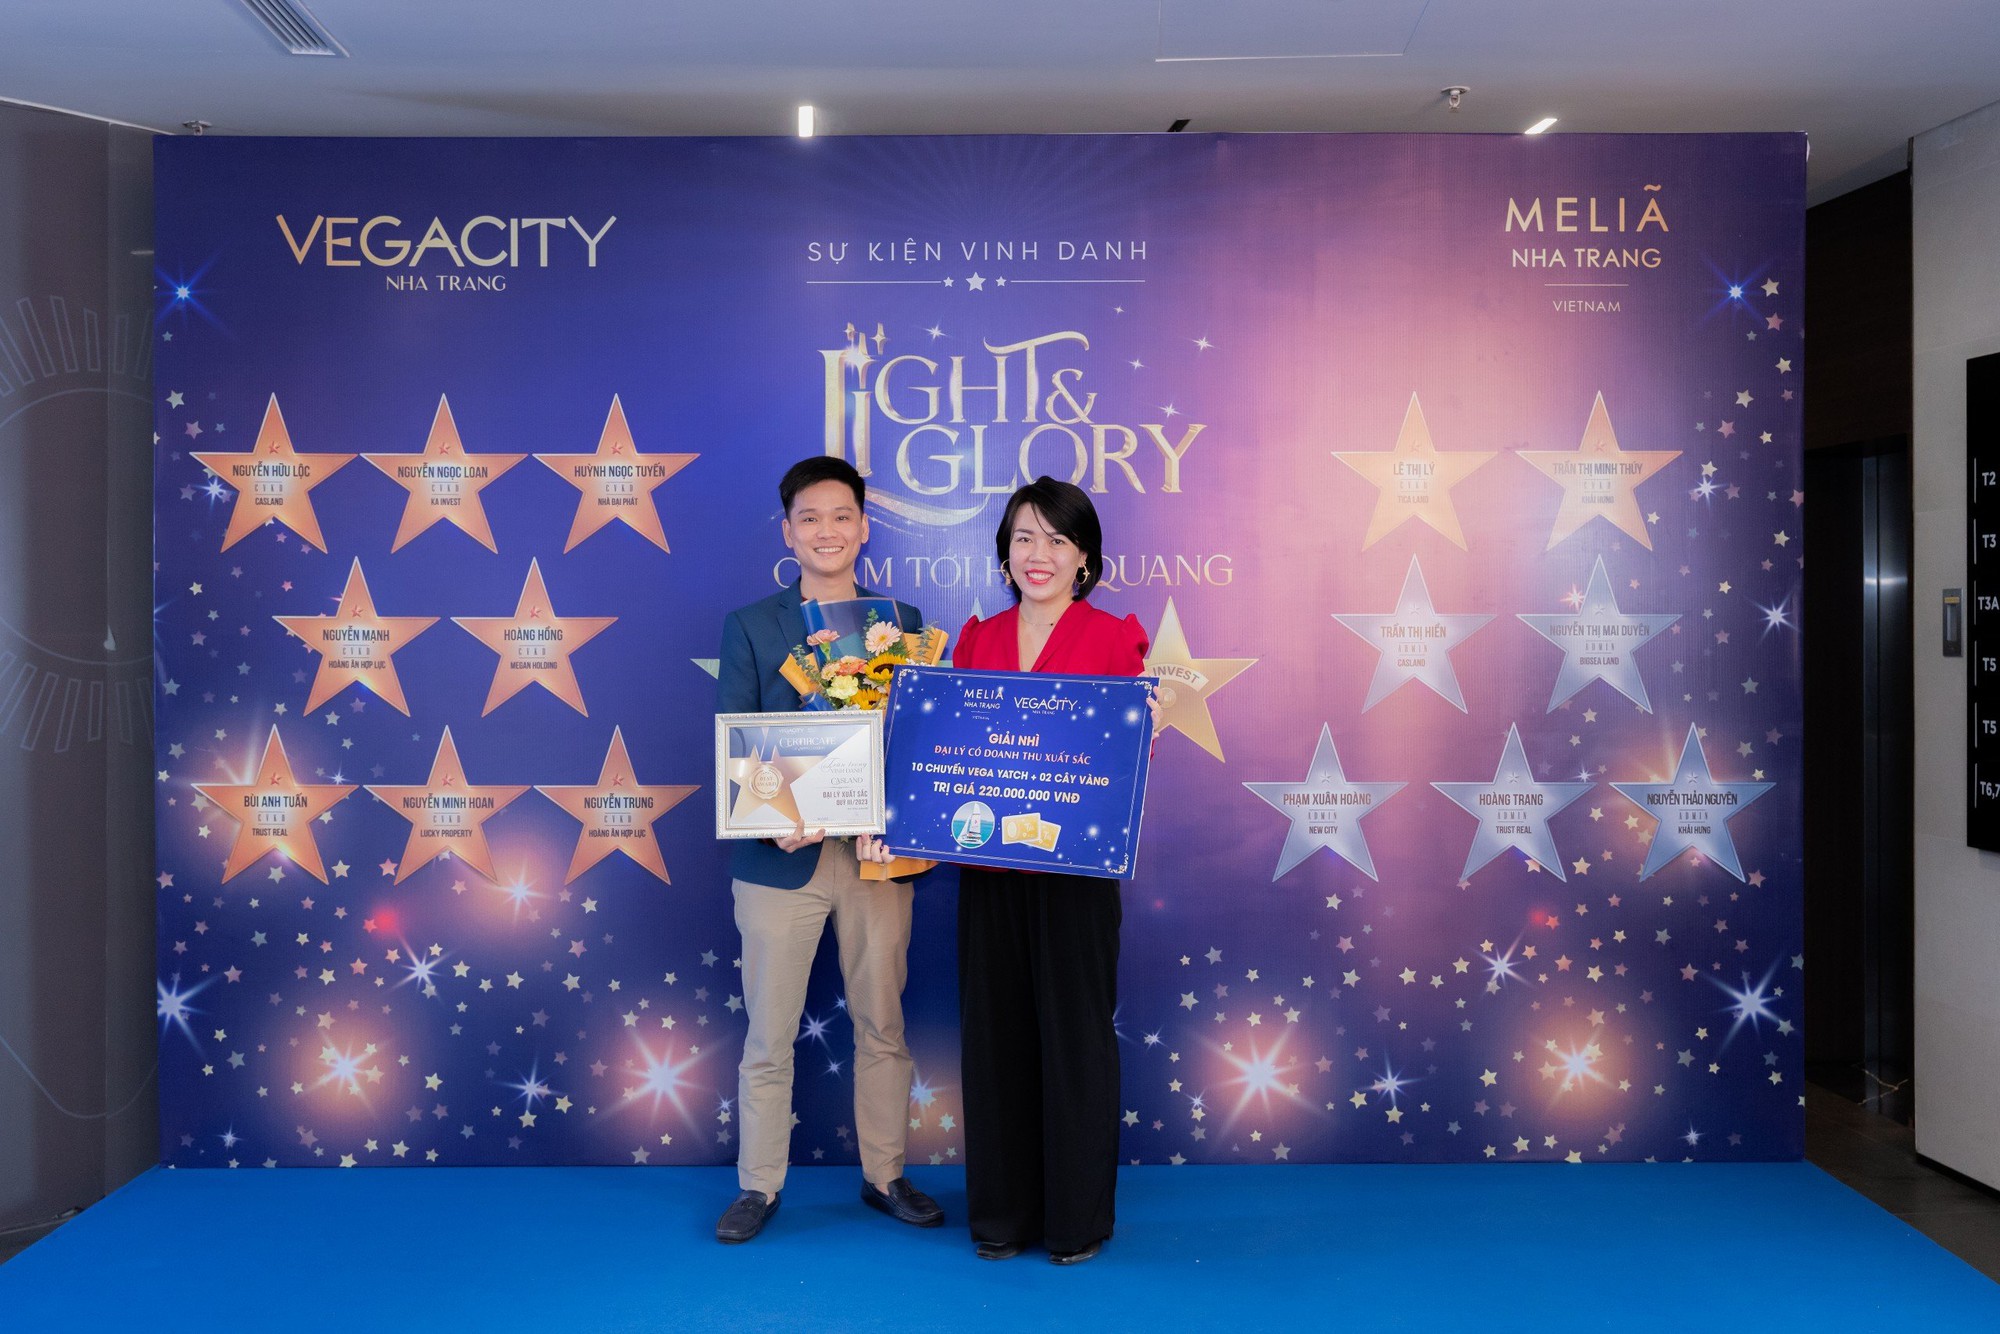 Gần 1 tỷ đồng tiền thưởng dành cho đại lý lập kỷ lục doanh số bán hàng Vega City Nha Trang - Ảnh 2.